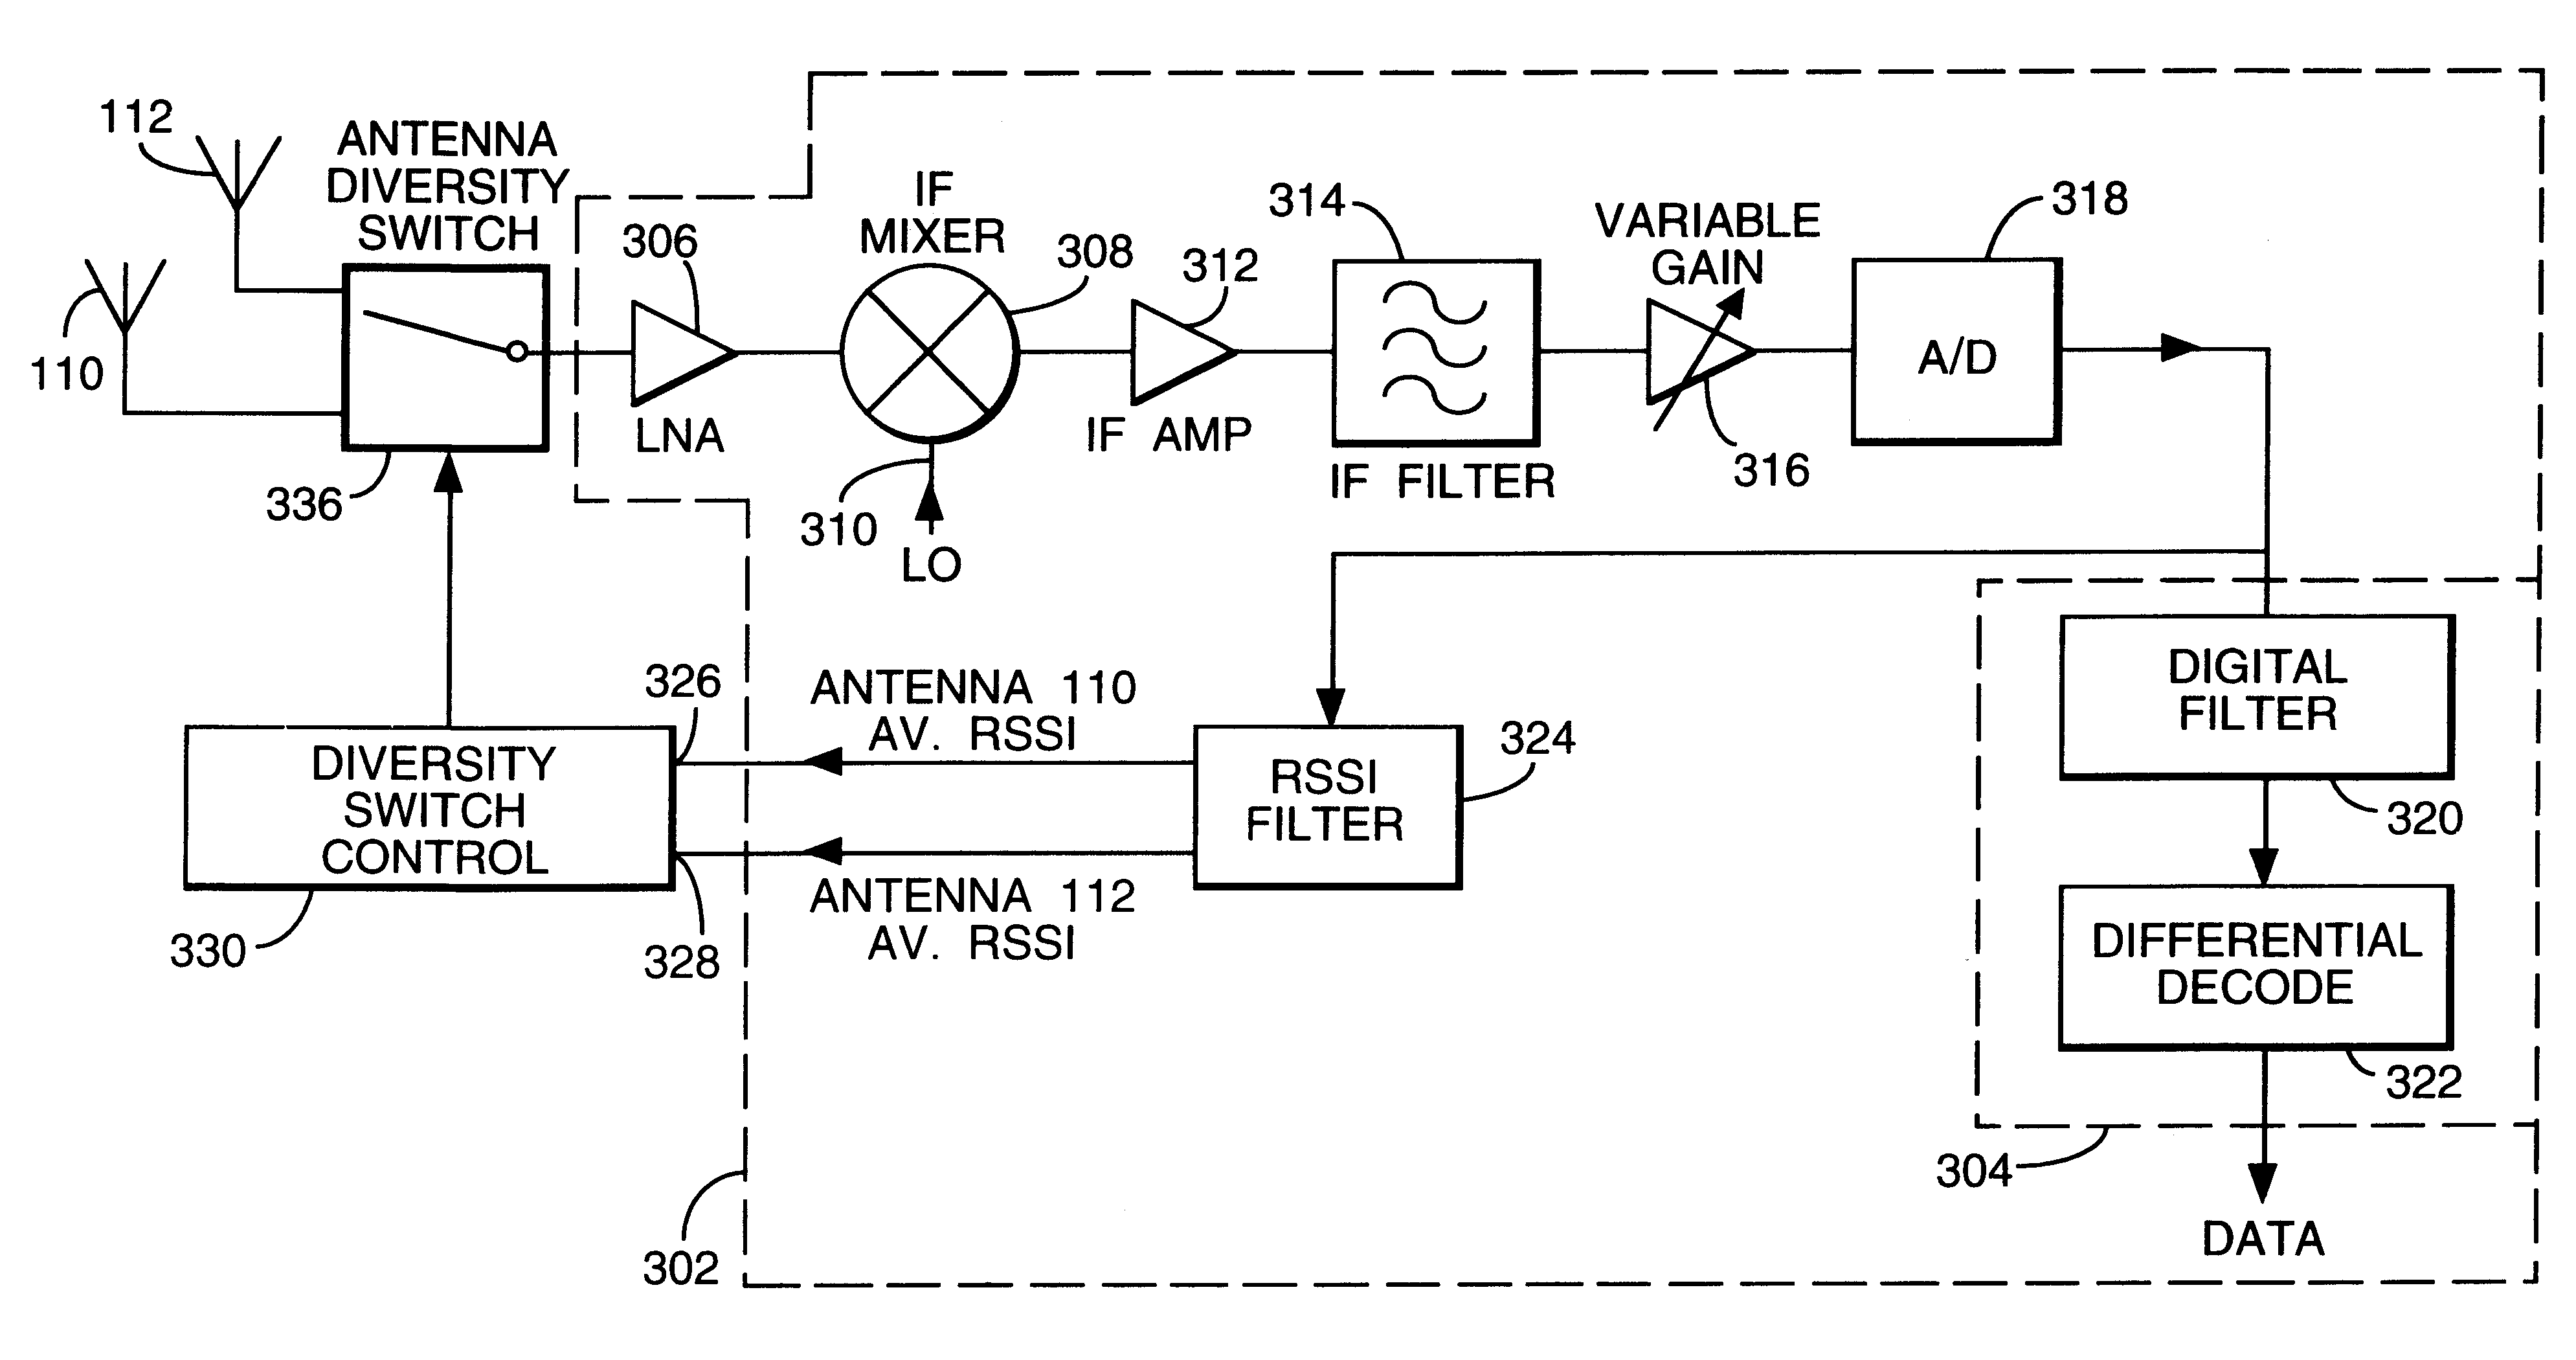 Antenna selection control circuitry